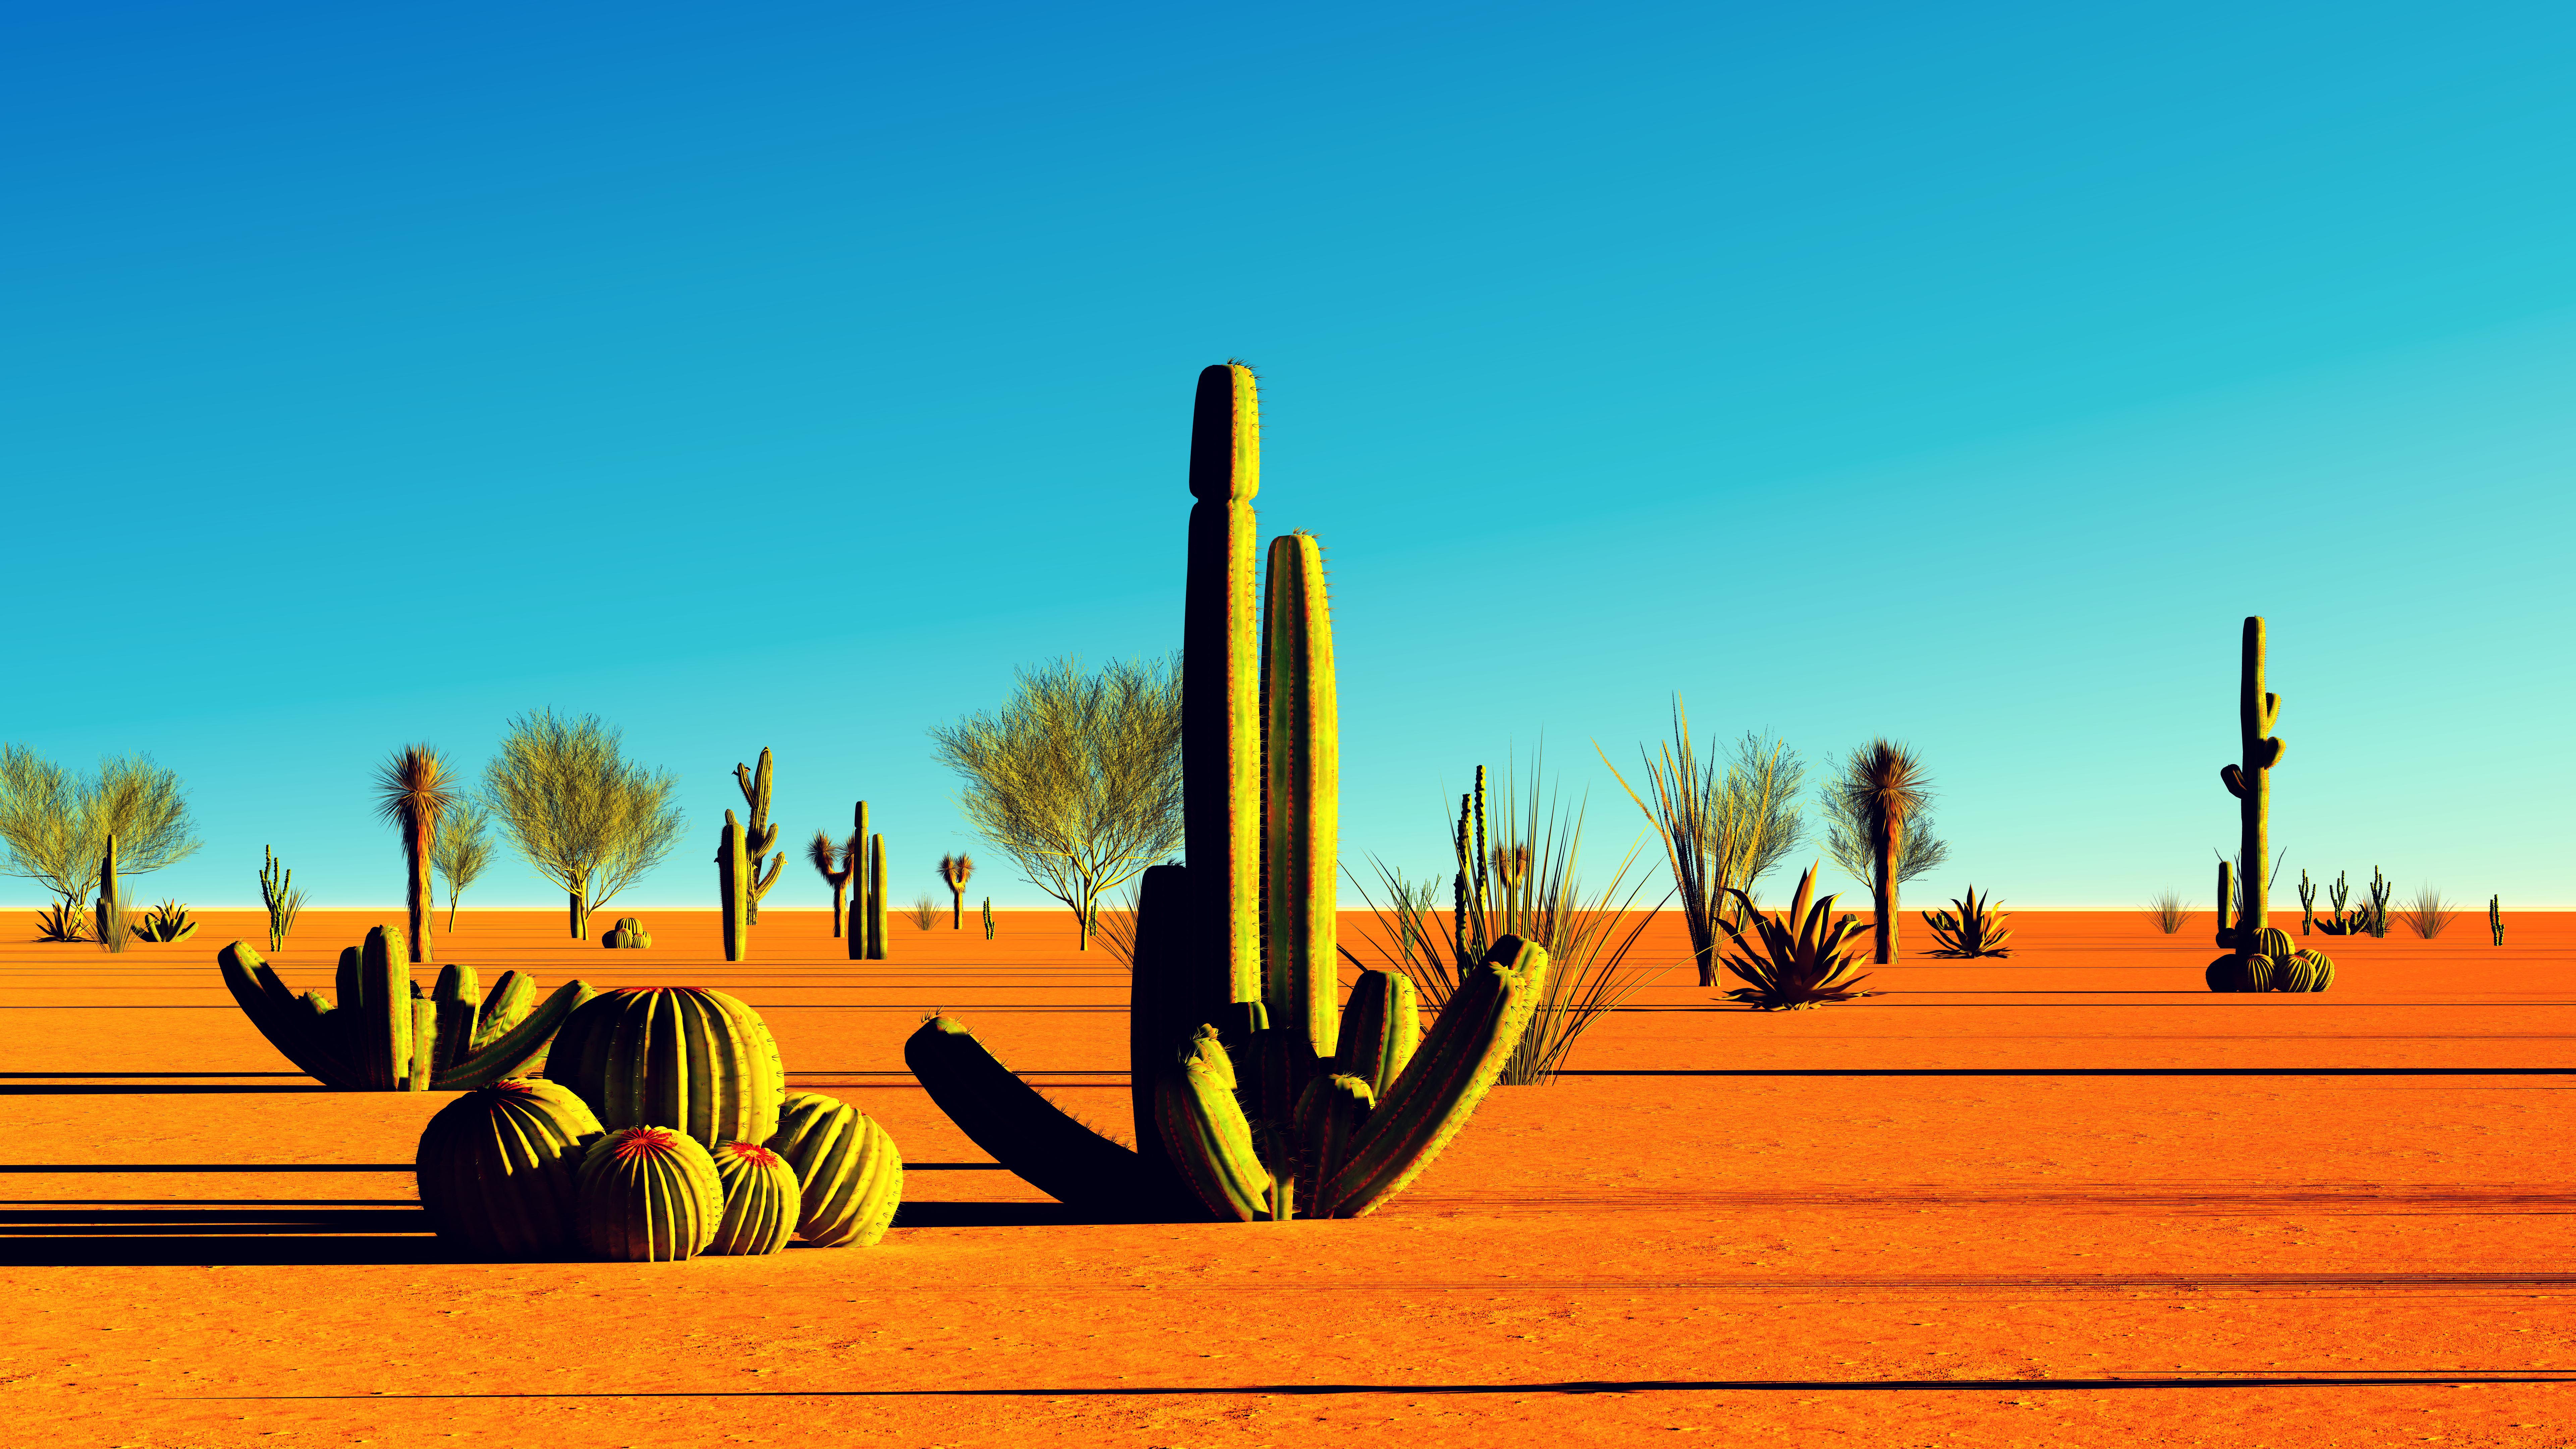 American desert